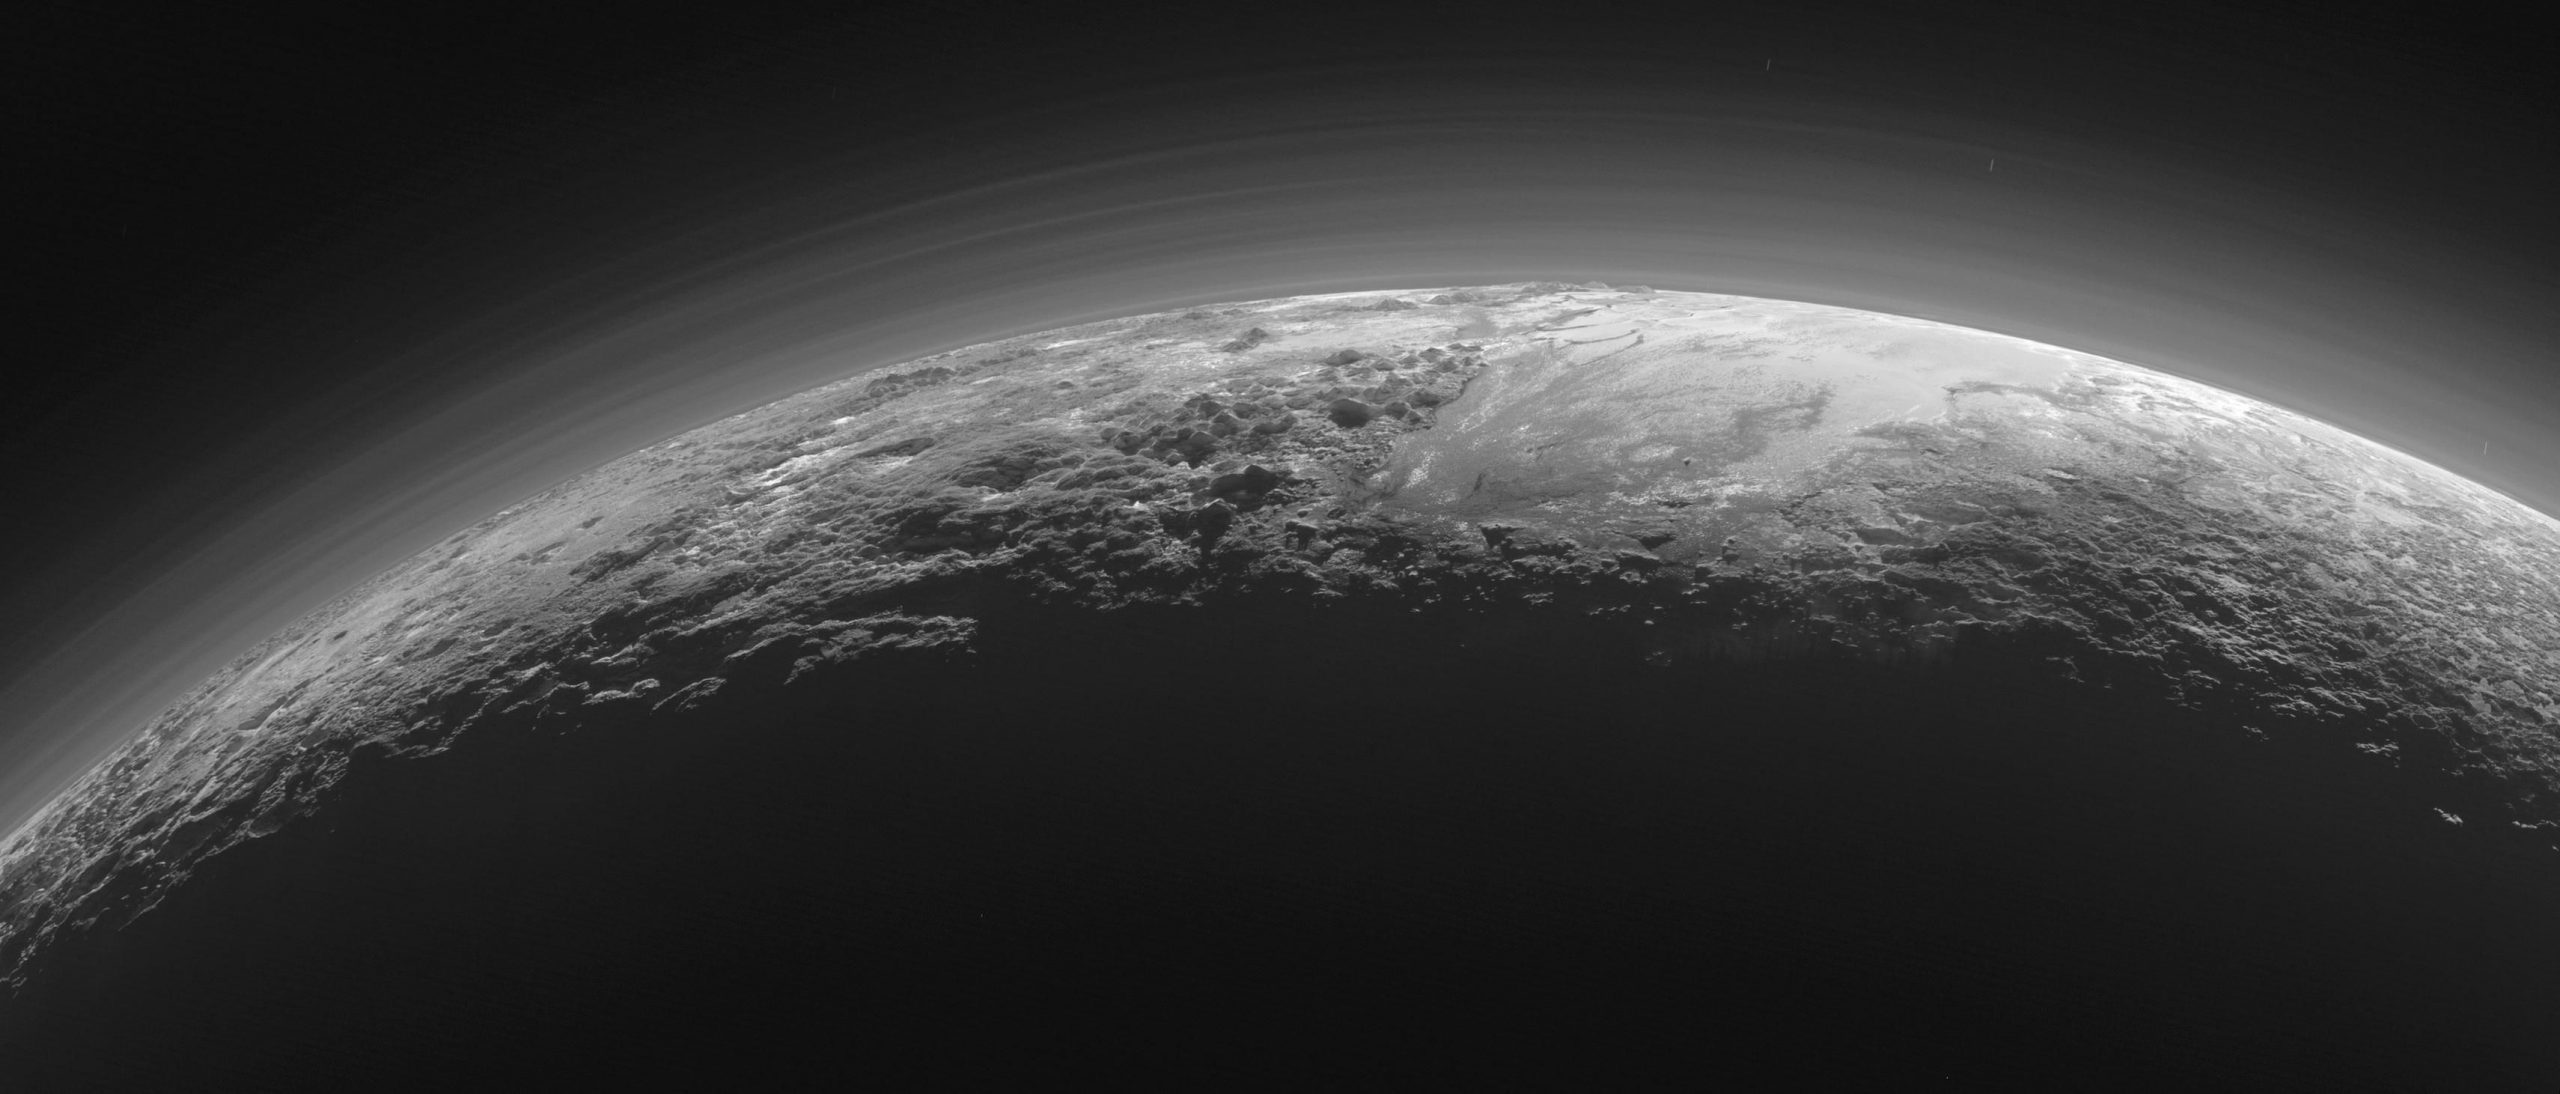 Slika veličanstvenih planina Plutona, zaleđenih ravnica i maglovitih maglica. Ova je slika snimljena oko 15 minuta nakon što je New Horizons najbliže prišao Plutonu 2015. godine. Izvor: New Horizons/NASA/JHUAPL/SwRL